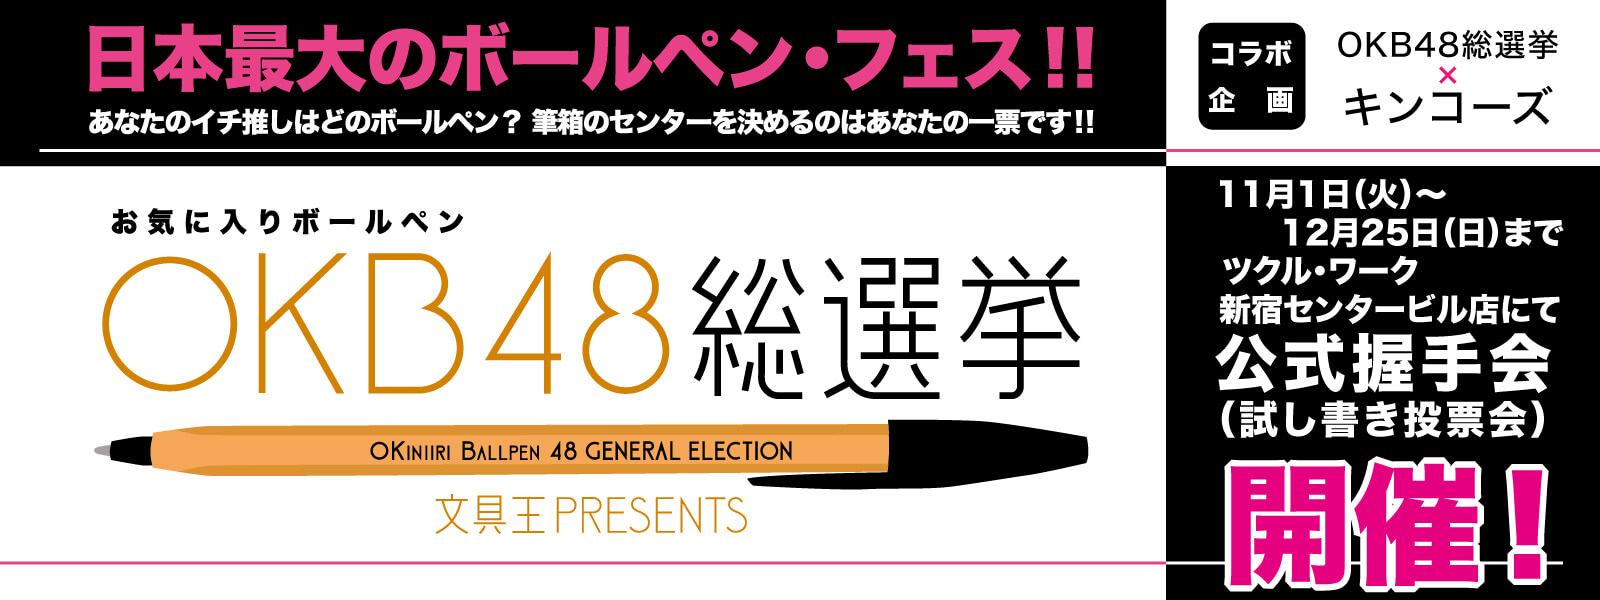 第12回OKB48総選挙